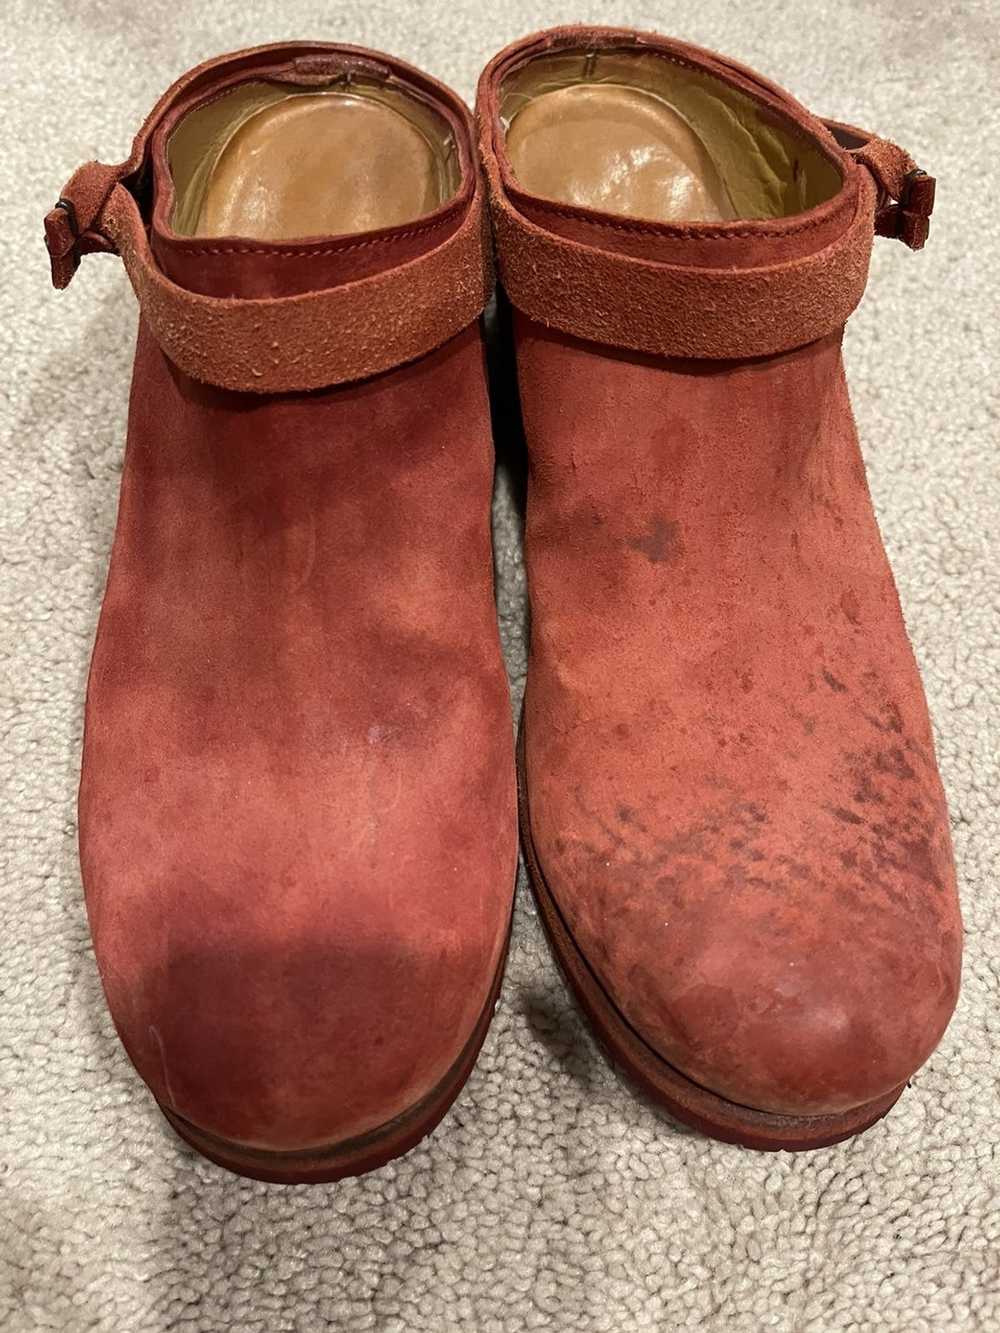 Ma+ Ma+ leather clogs/ mules - image 8